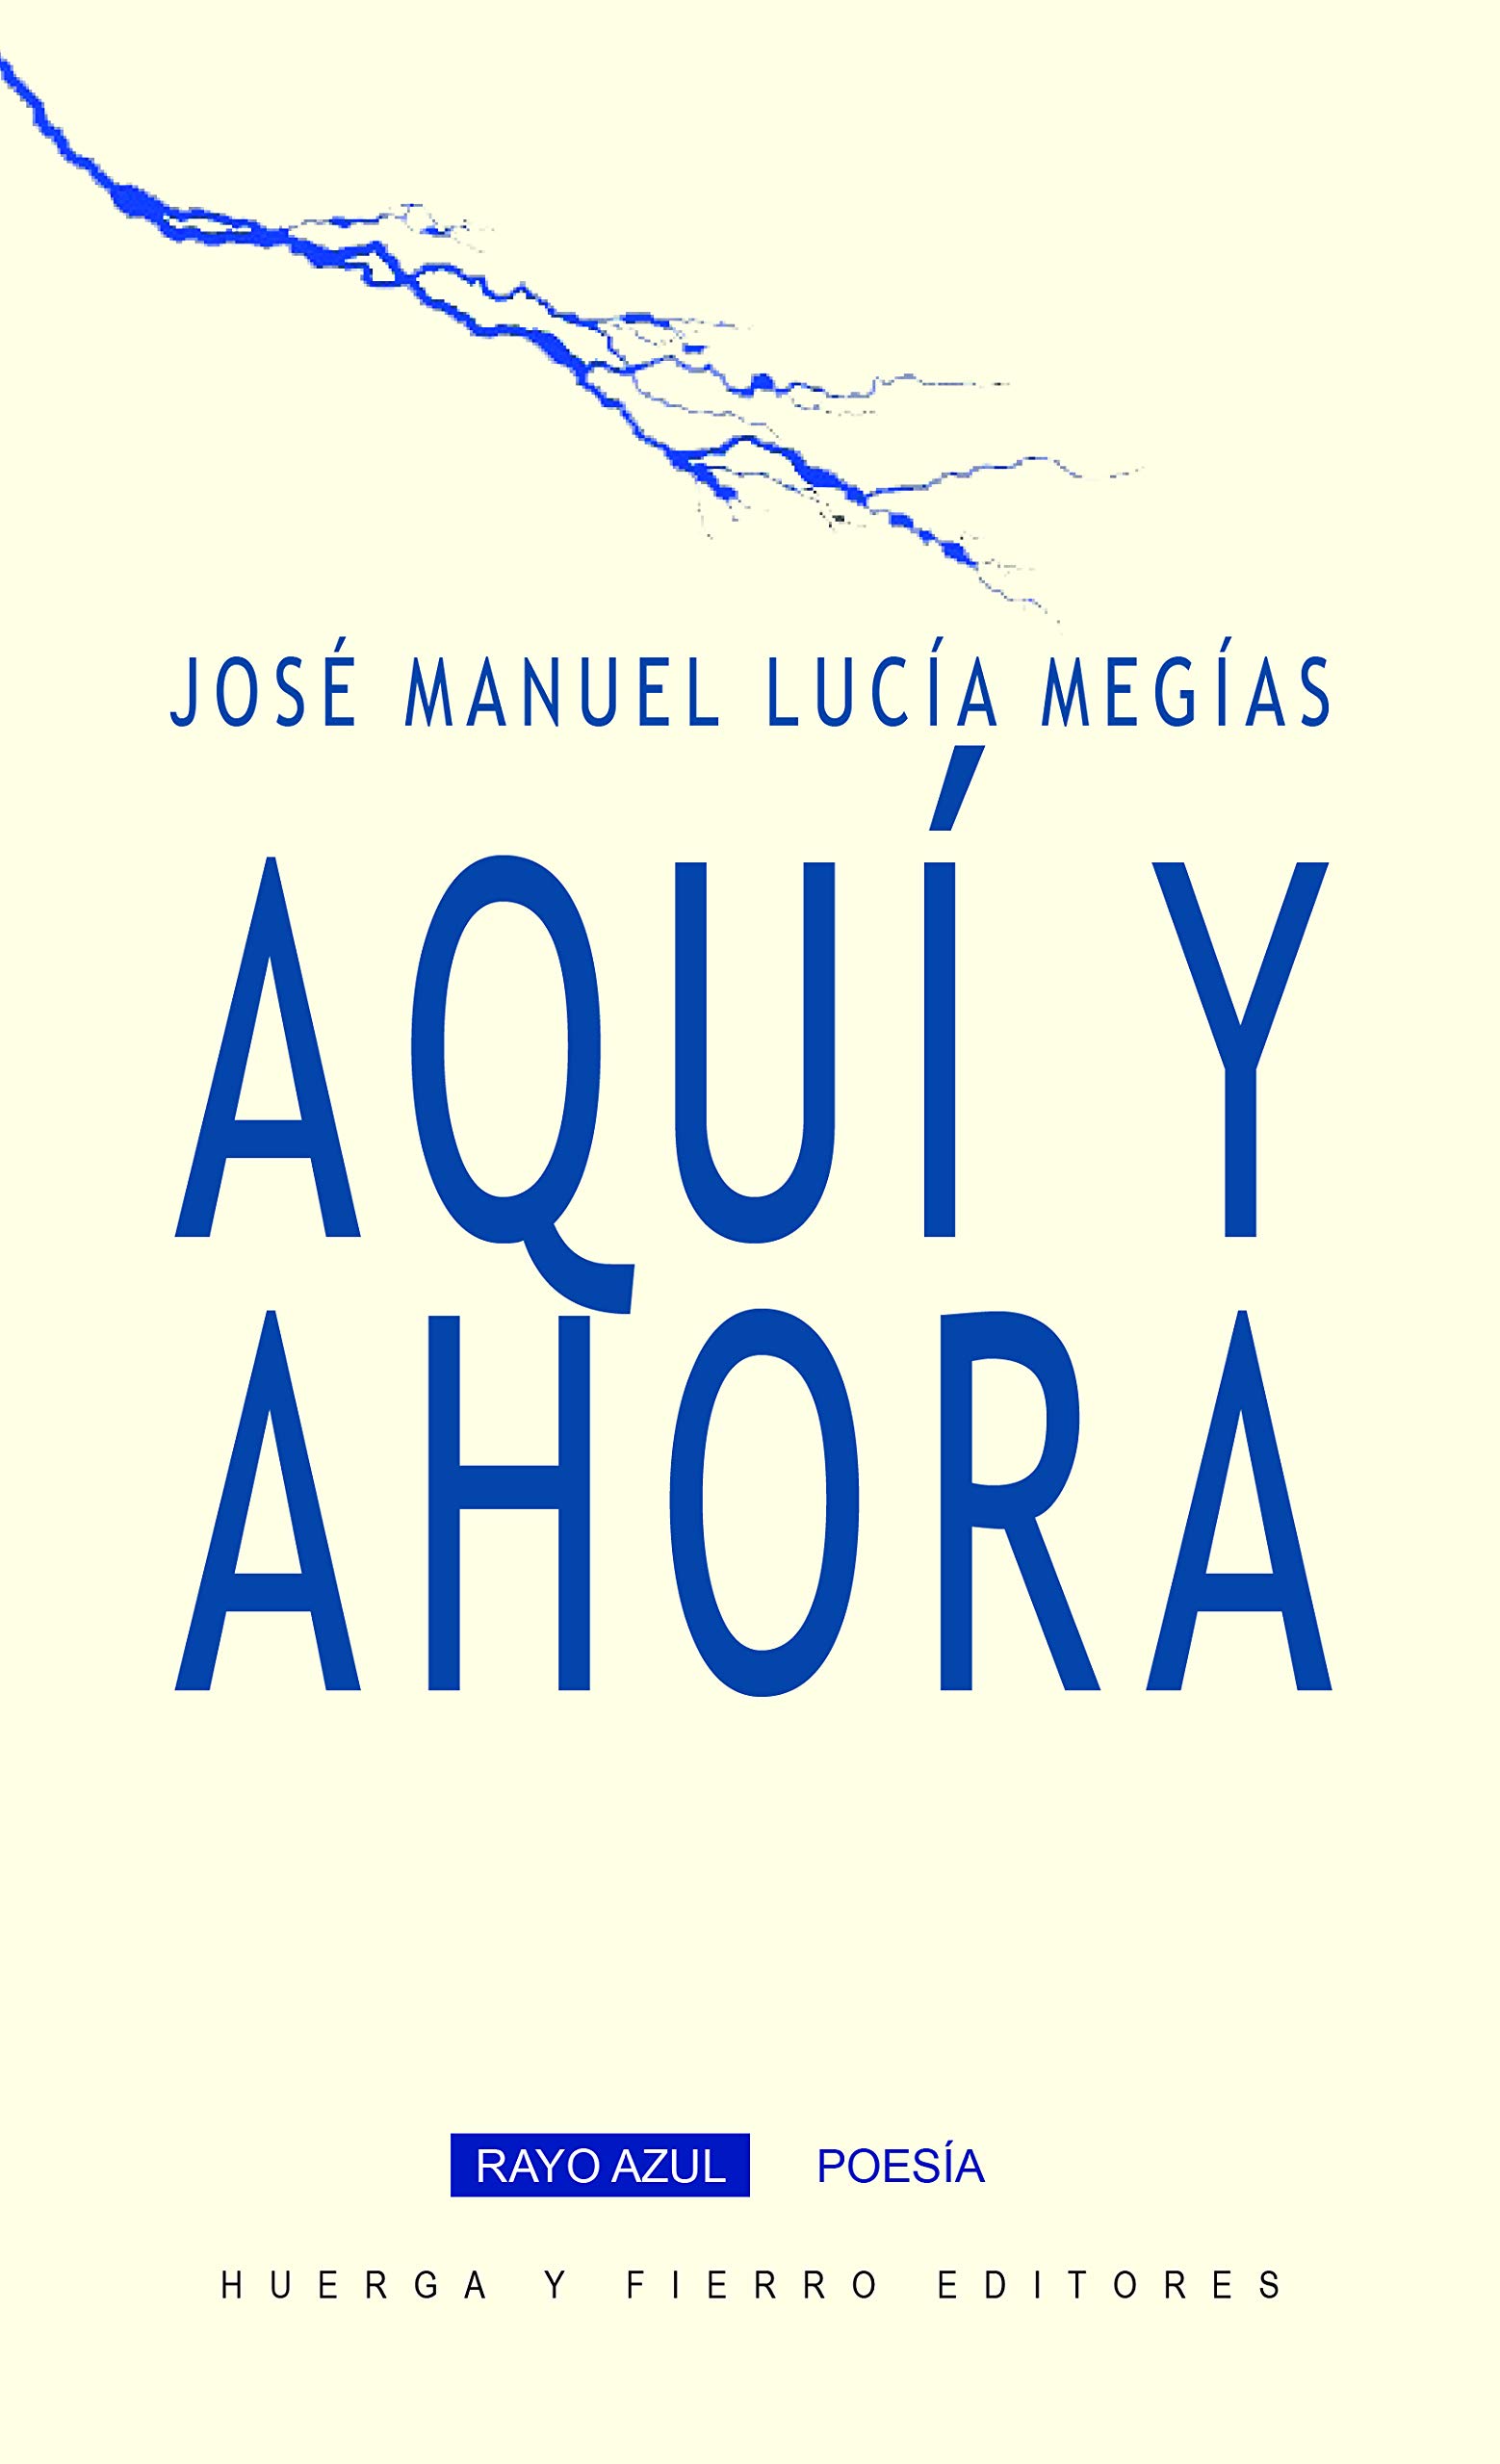 5 poemas de José Manuel Lucía Megías